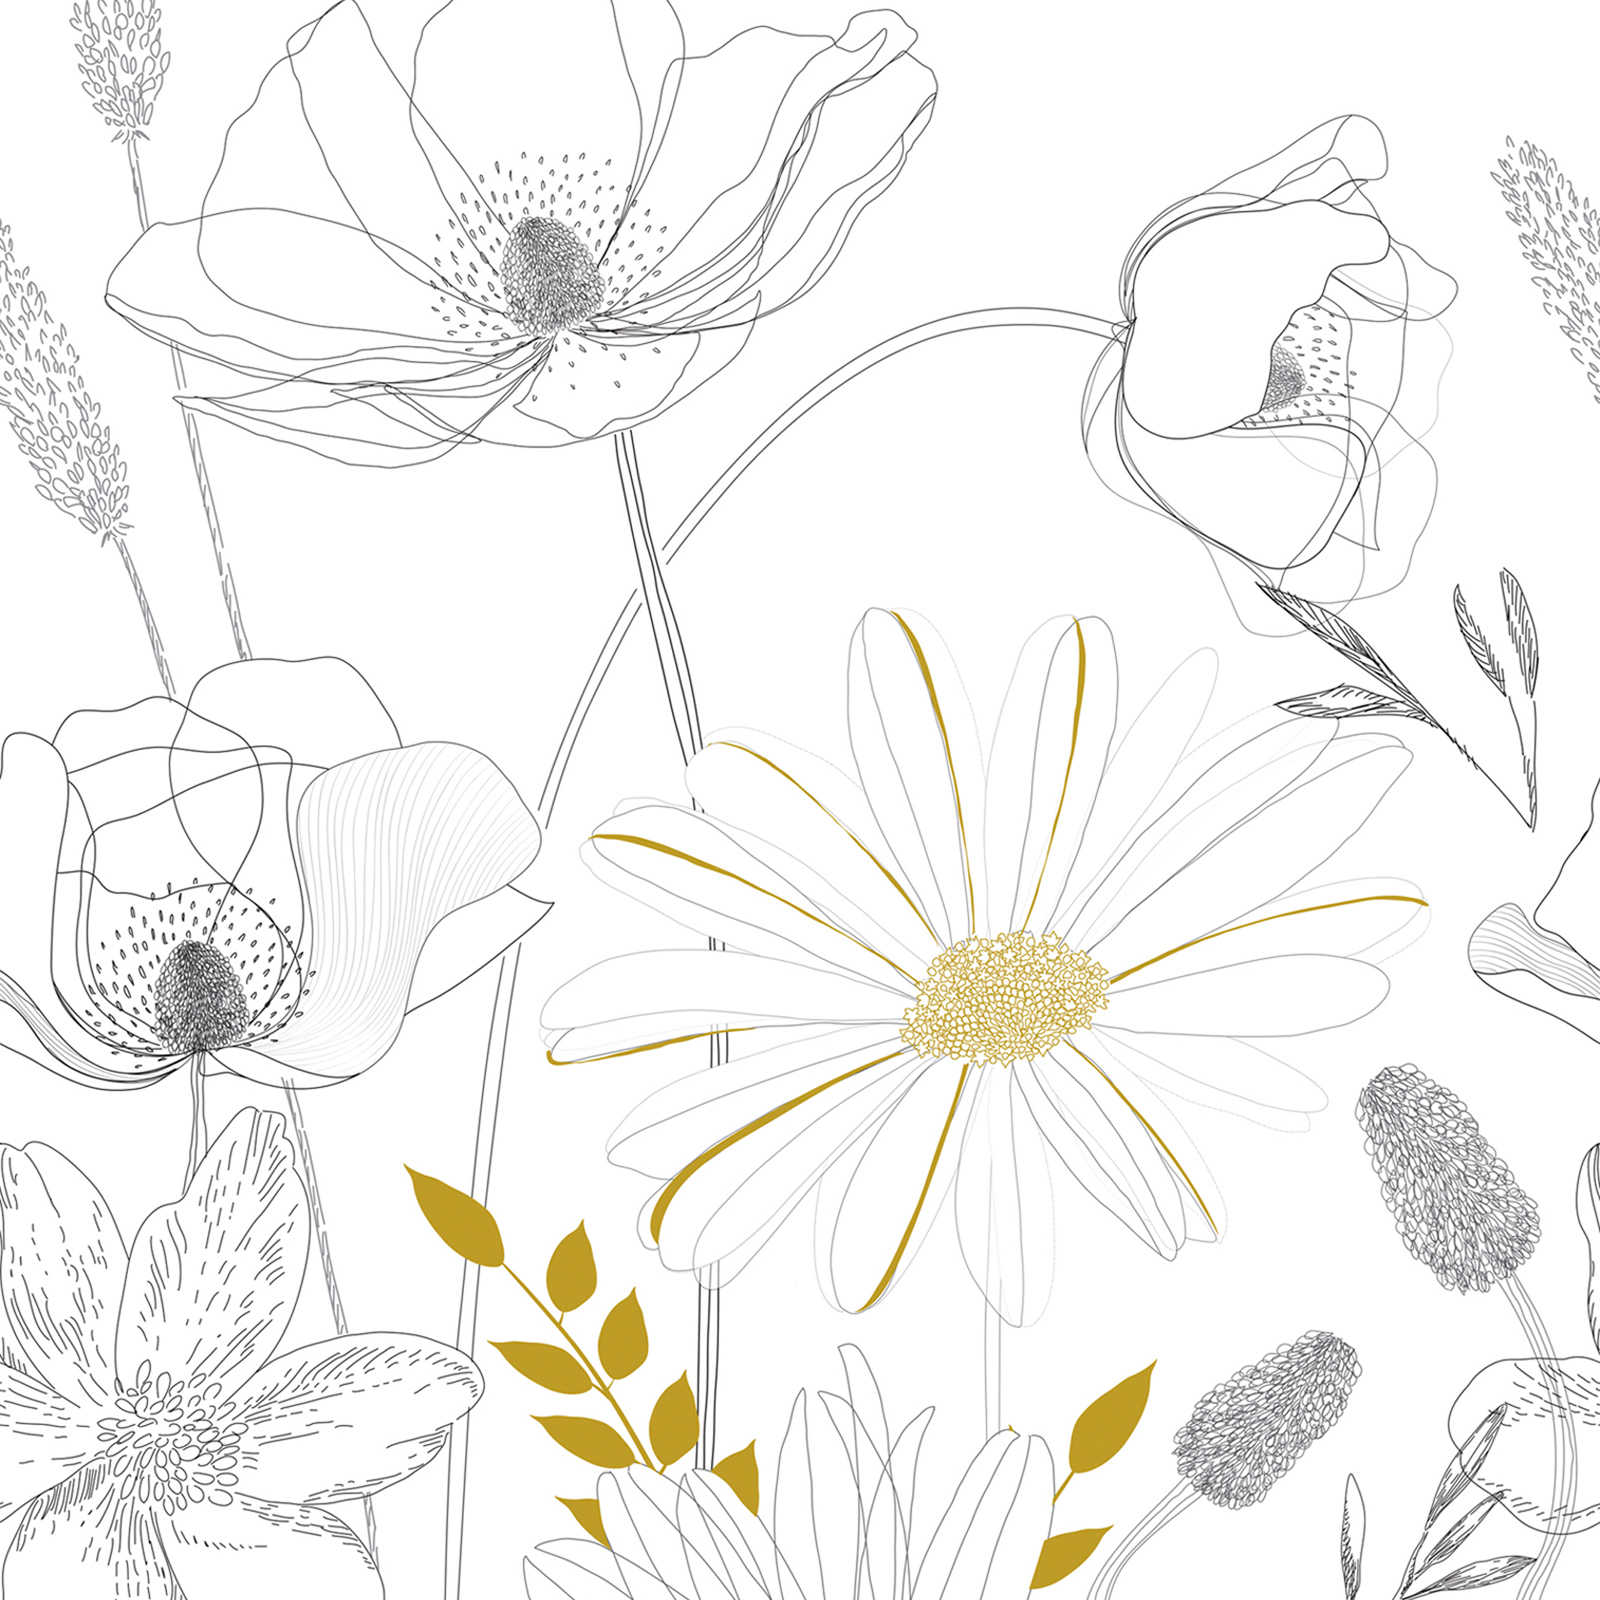 Papel Pintado con Motivos Florales Dibujados y Acentos de Color - Blanco, Negro, Amarillo
